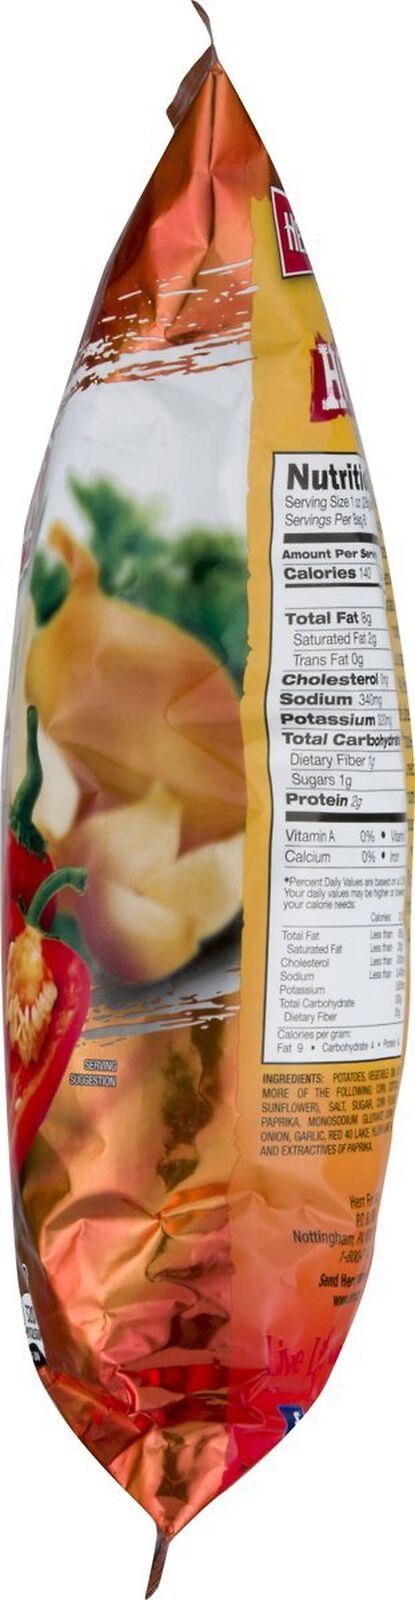 Herr's Red Hot Potato Chips - 8 oz. Bag (3 Bags)